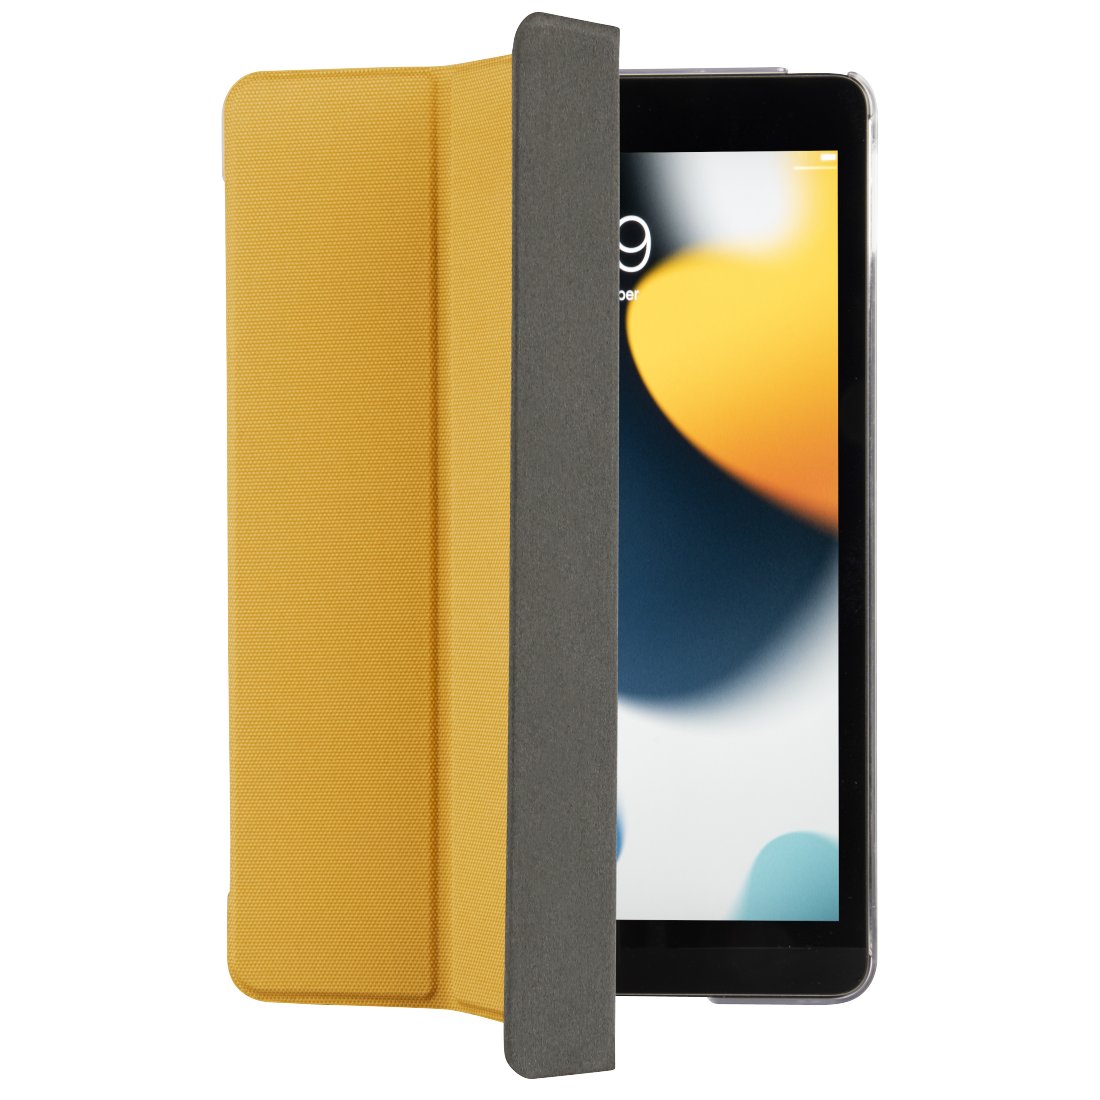 Etui HAMA Terra do iPad 10.2 19/20/21 Żółty | DARMOWY TRANSPORT! Bezpłatny transport | Raty